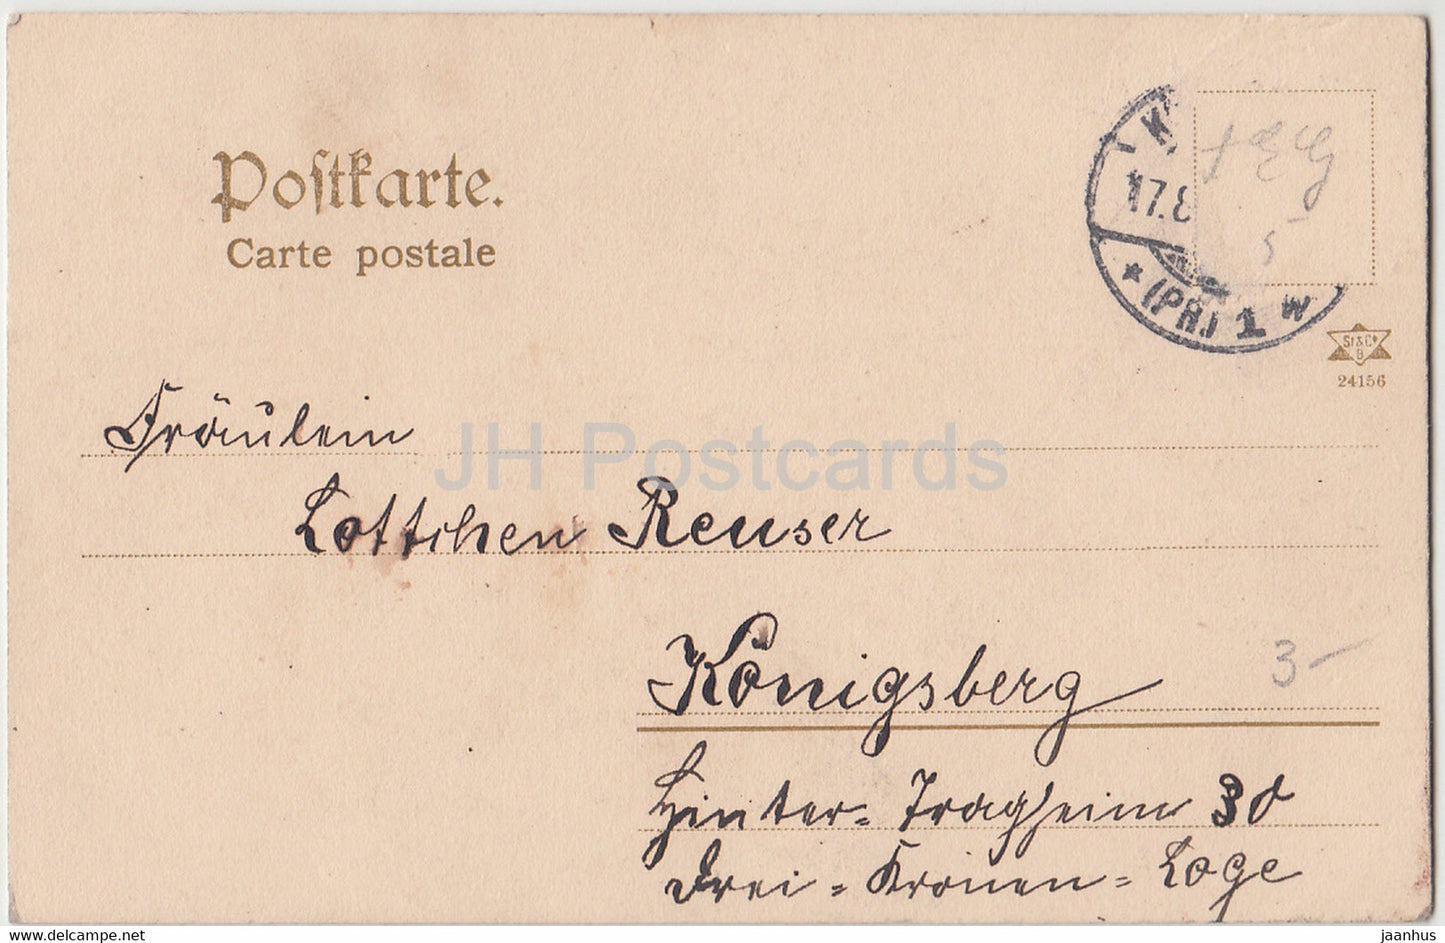 Junge und Mädchen – Kinder – Trachten – Fischer – Königsberg – alte Postkarte – 1900er – Deutschland – gebraucht